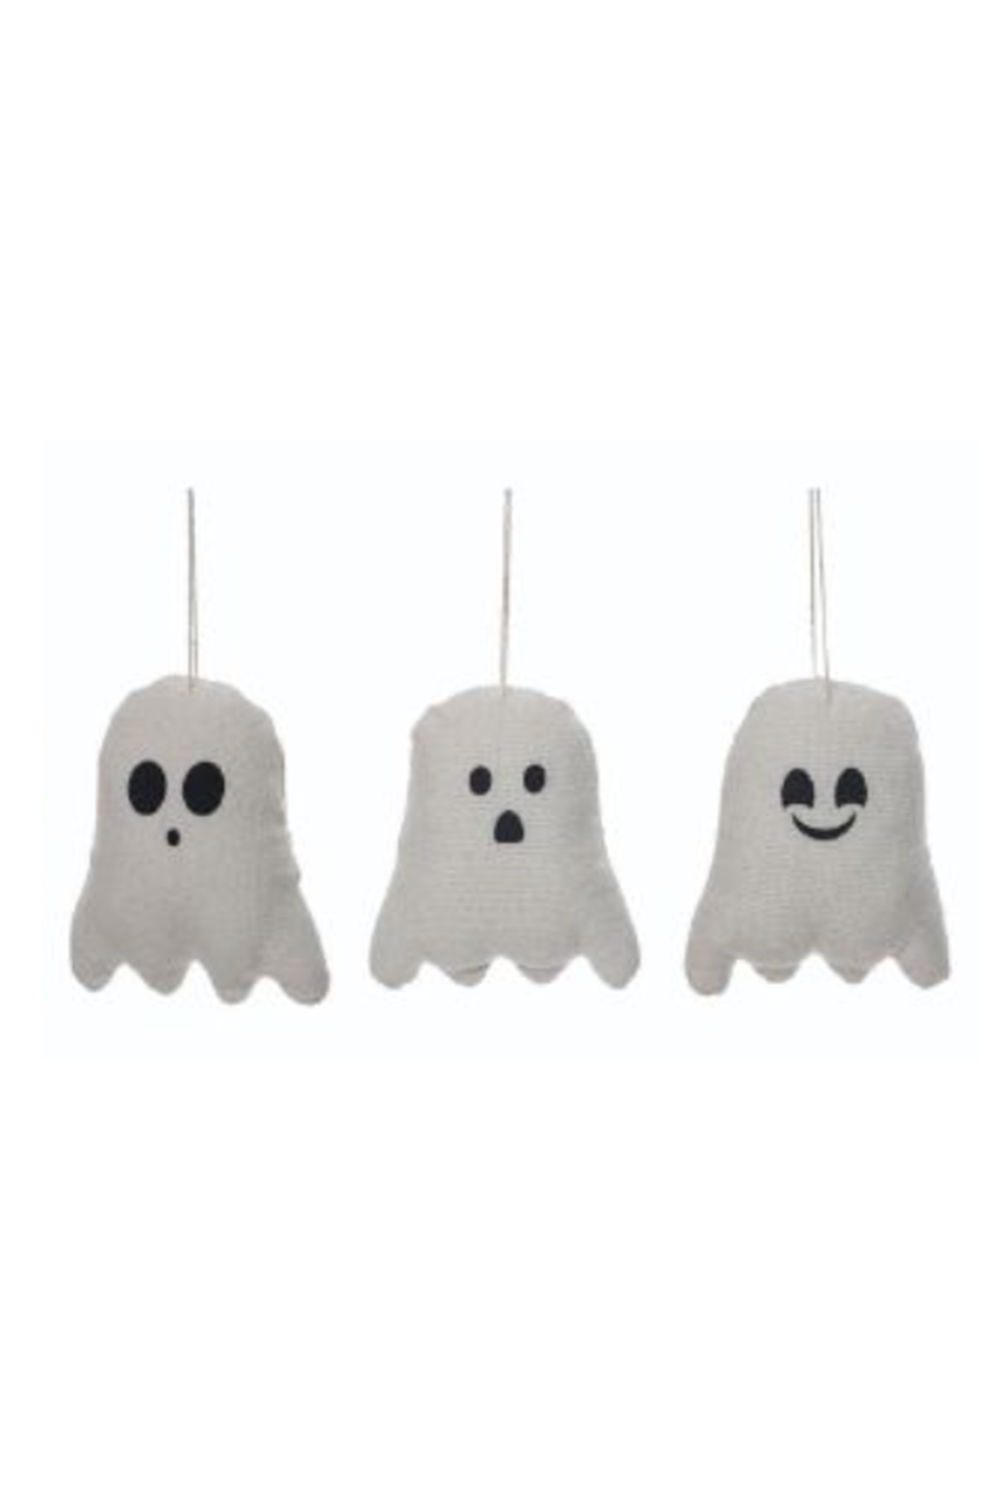 Mini Plush Ghost Hanging Figure